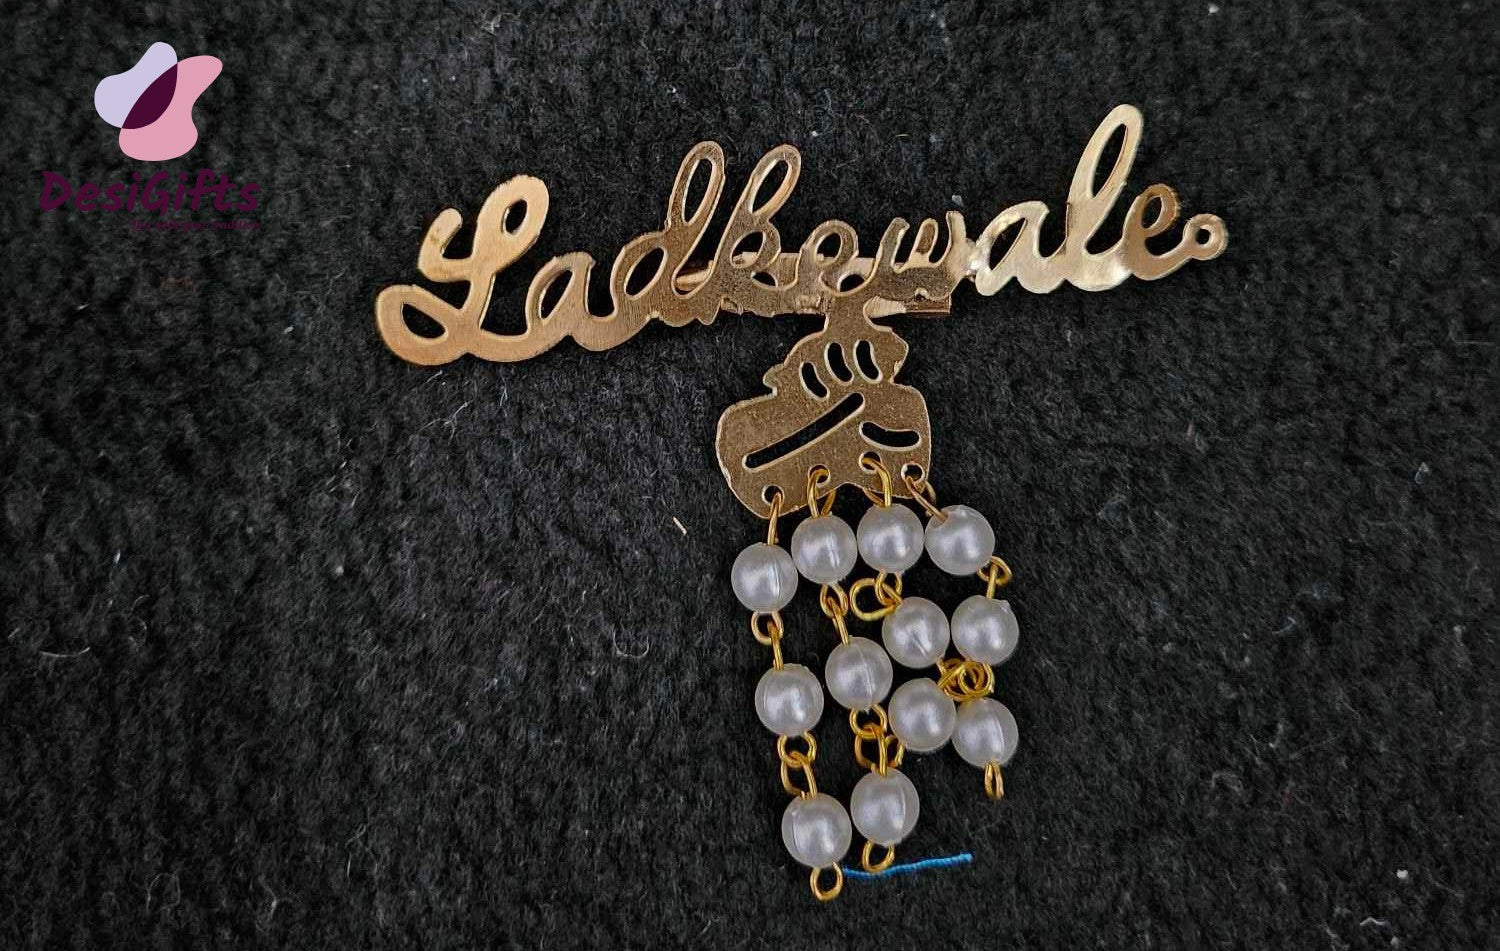 Ladke Wale and Ladki Wale Brass brooch, Wedding Brooch, Pin, HDR-1130